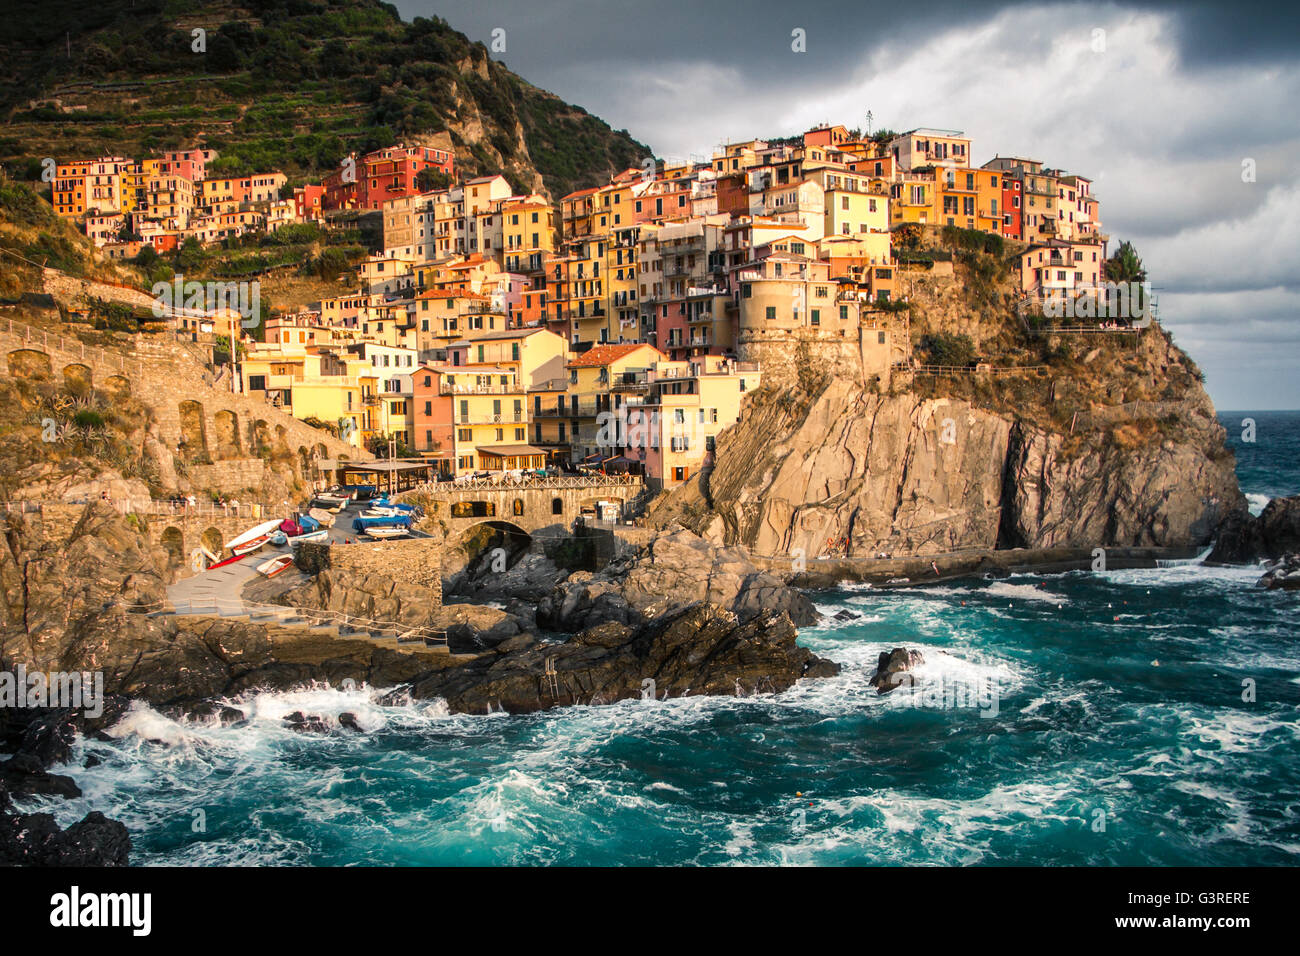 Schöne Stadt von Manarola, eines der berühmten Cinque Terre, Italien Stockfoto